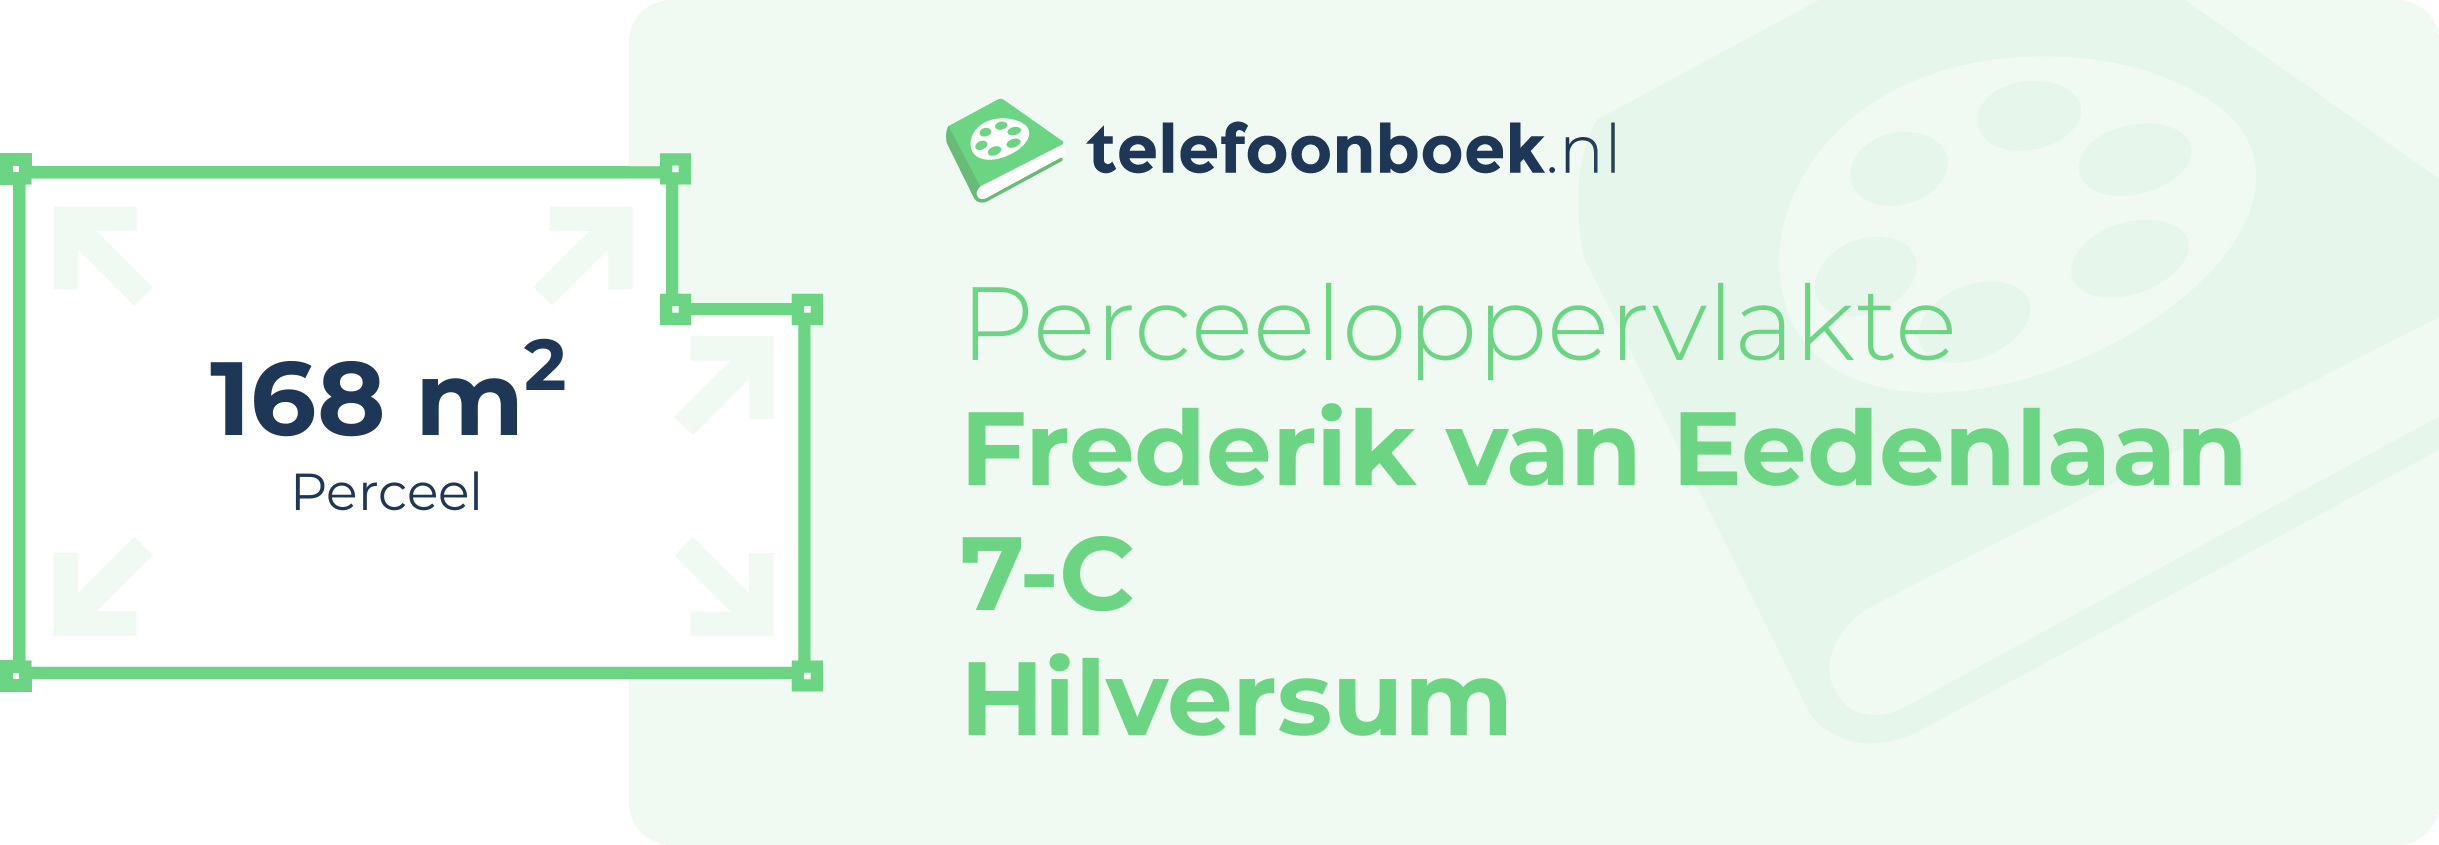 Perceeloppervlakte Frederik Van Eedenlaan 7-C Hilversum